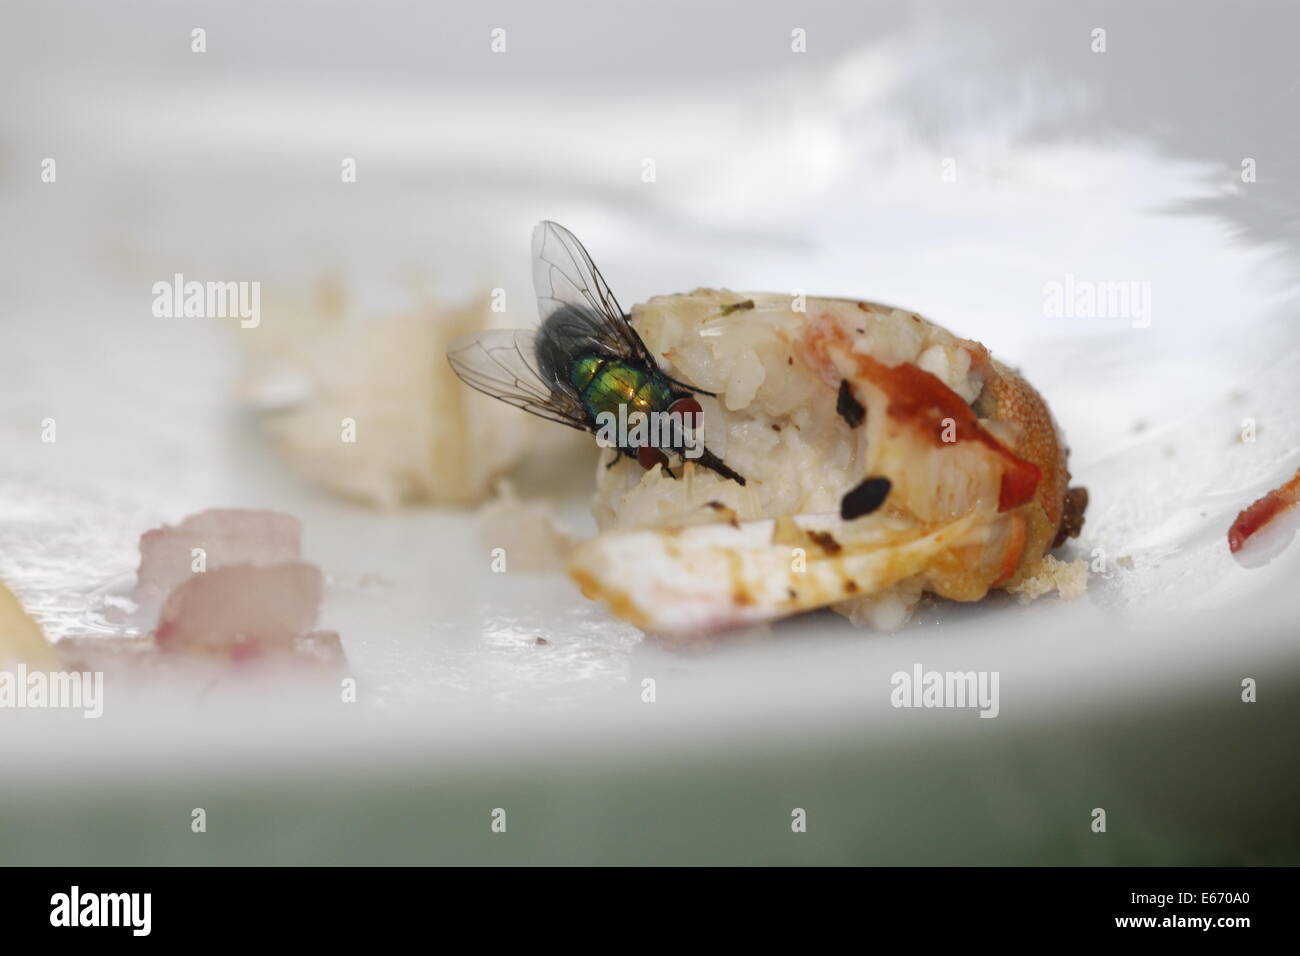 Il cibo era disgustoso, cattiva igiene, yuk, una grande greenbottle volare su un granchio claw su una piastra bianca. Foto Stock